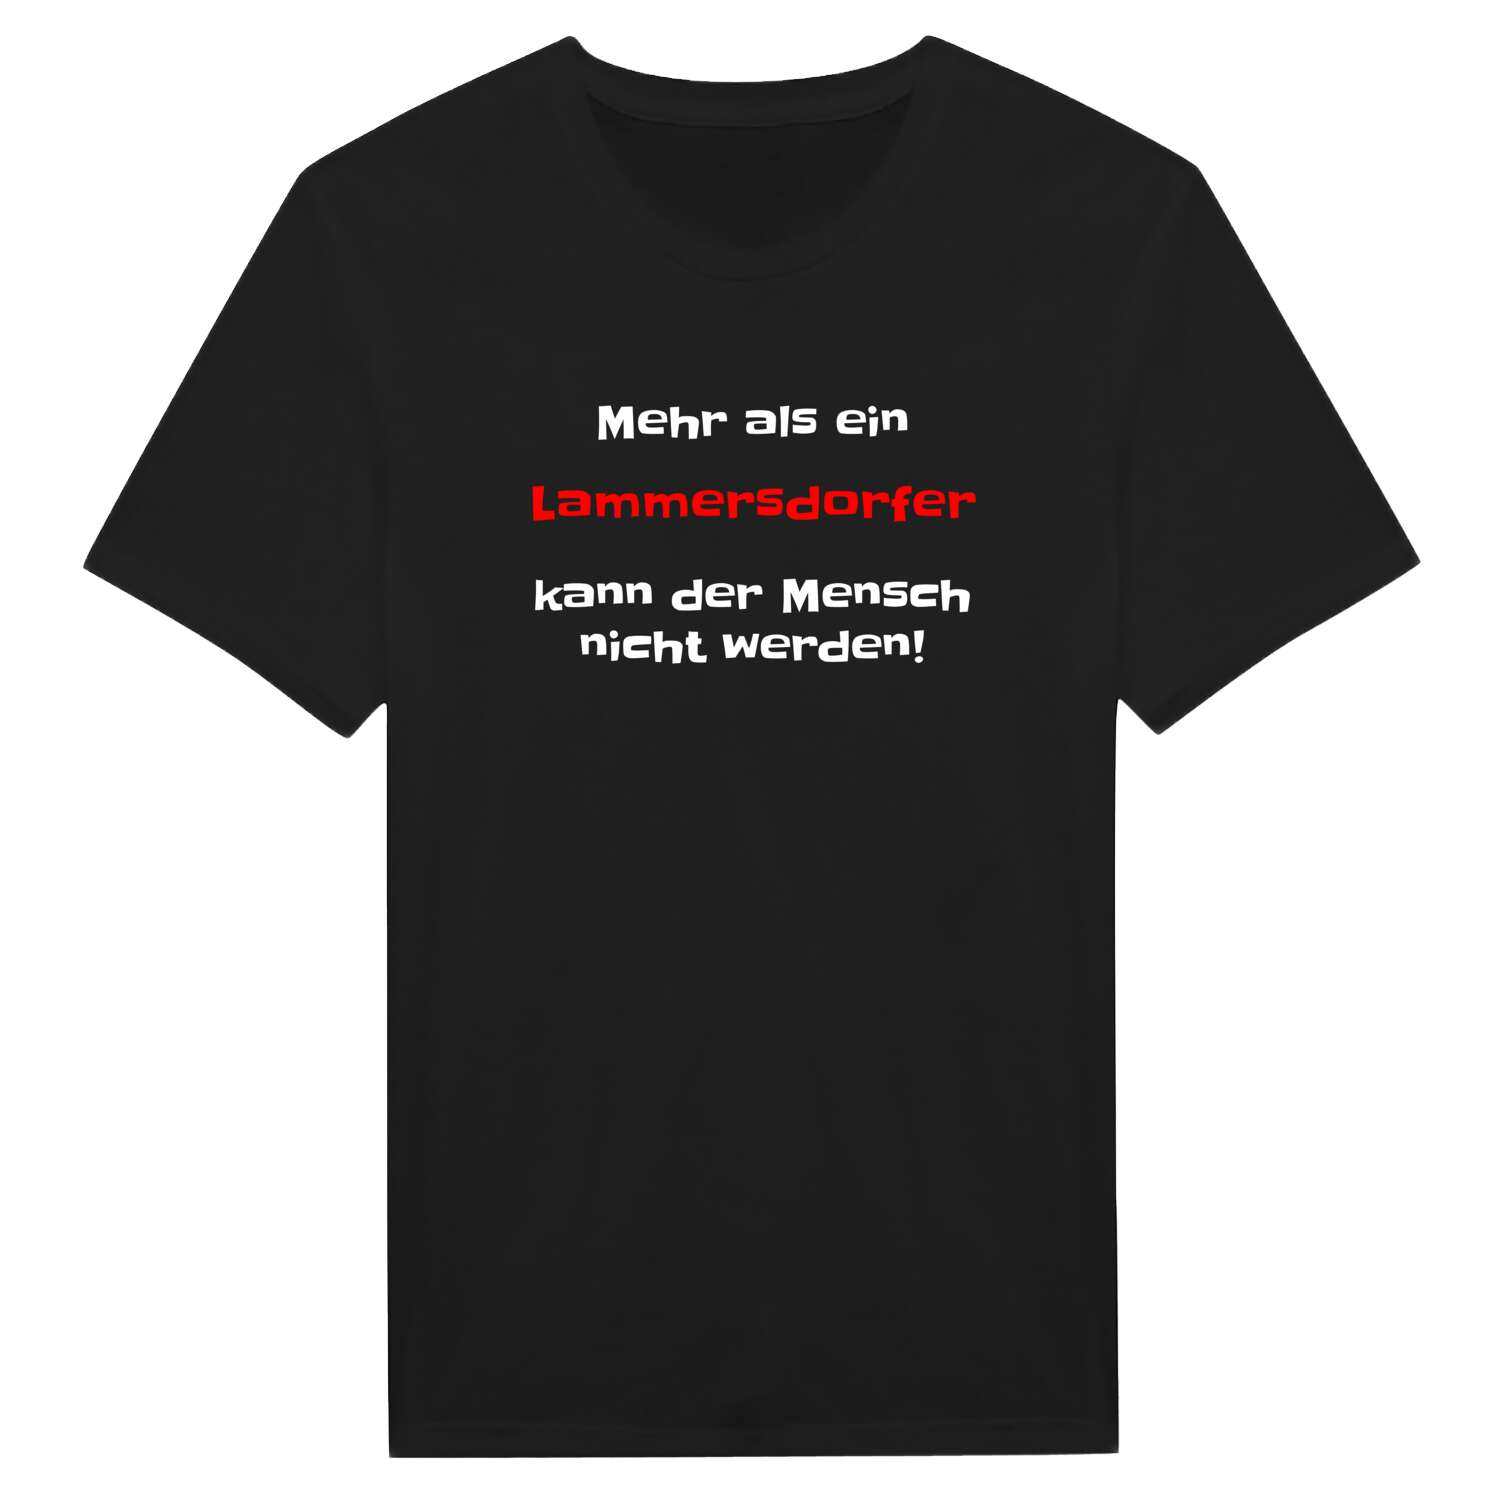 Lammersdorf T-Shirt »Mehr als ein«